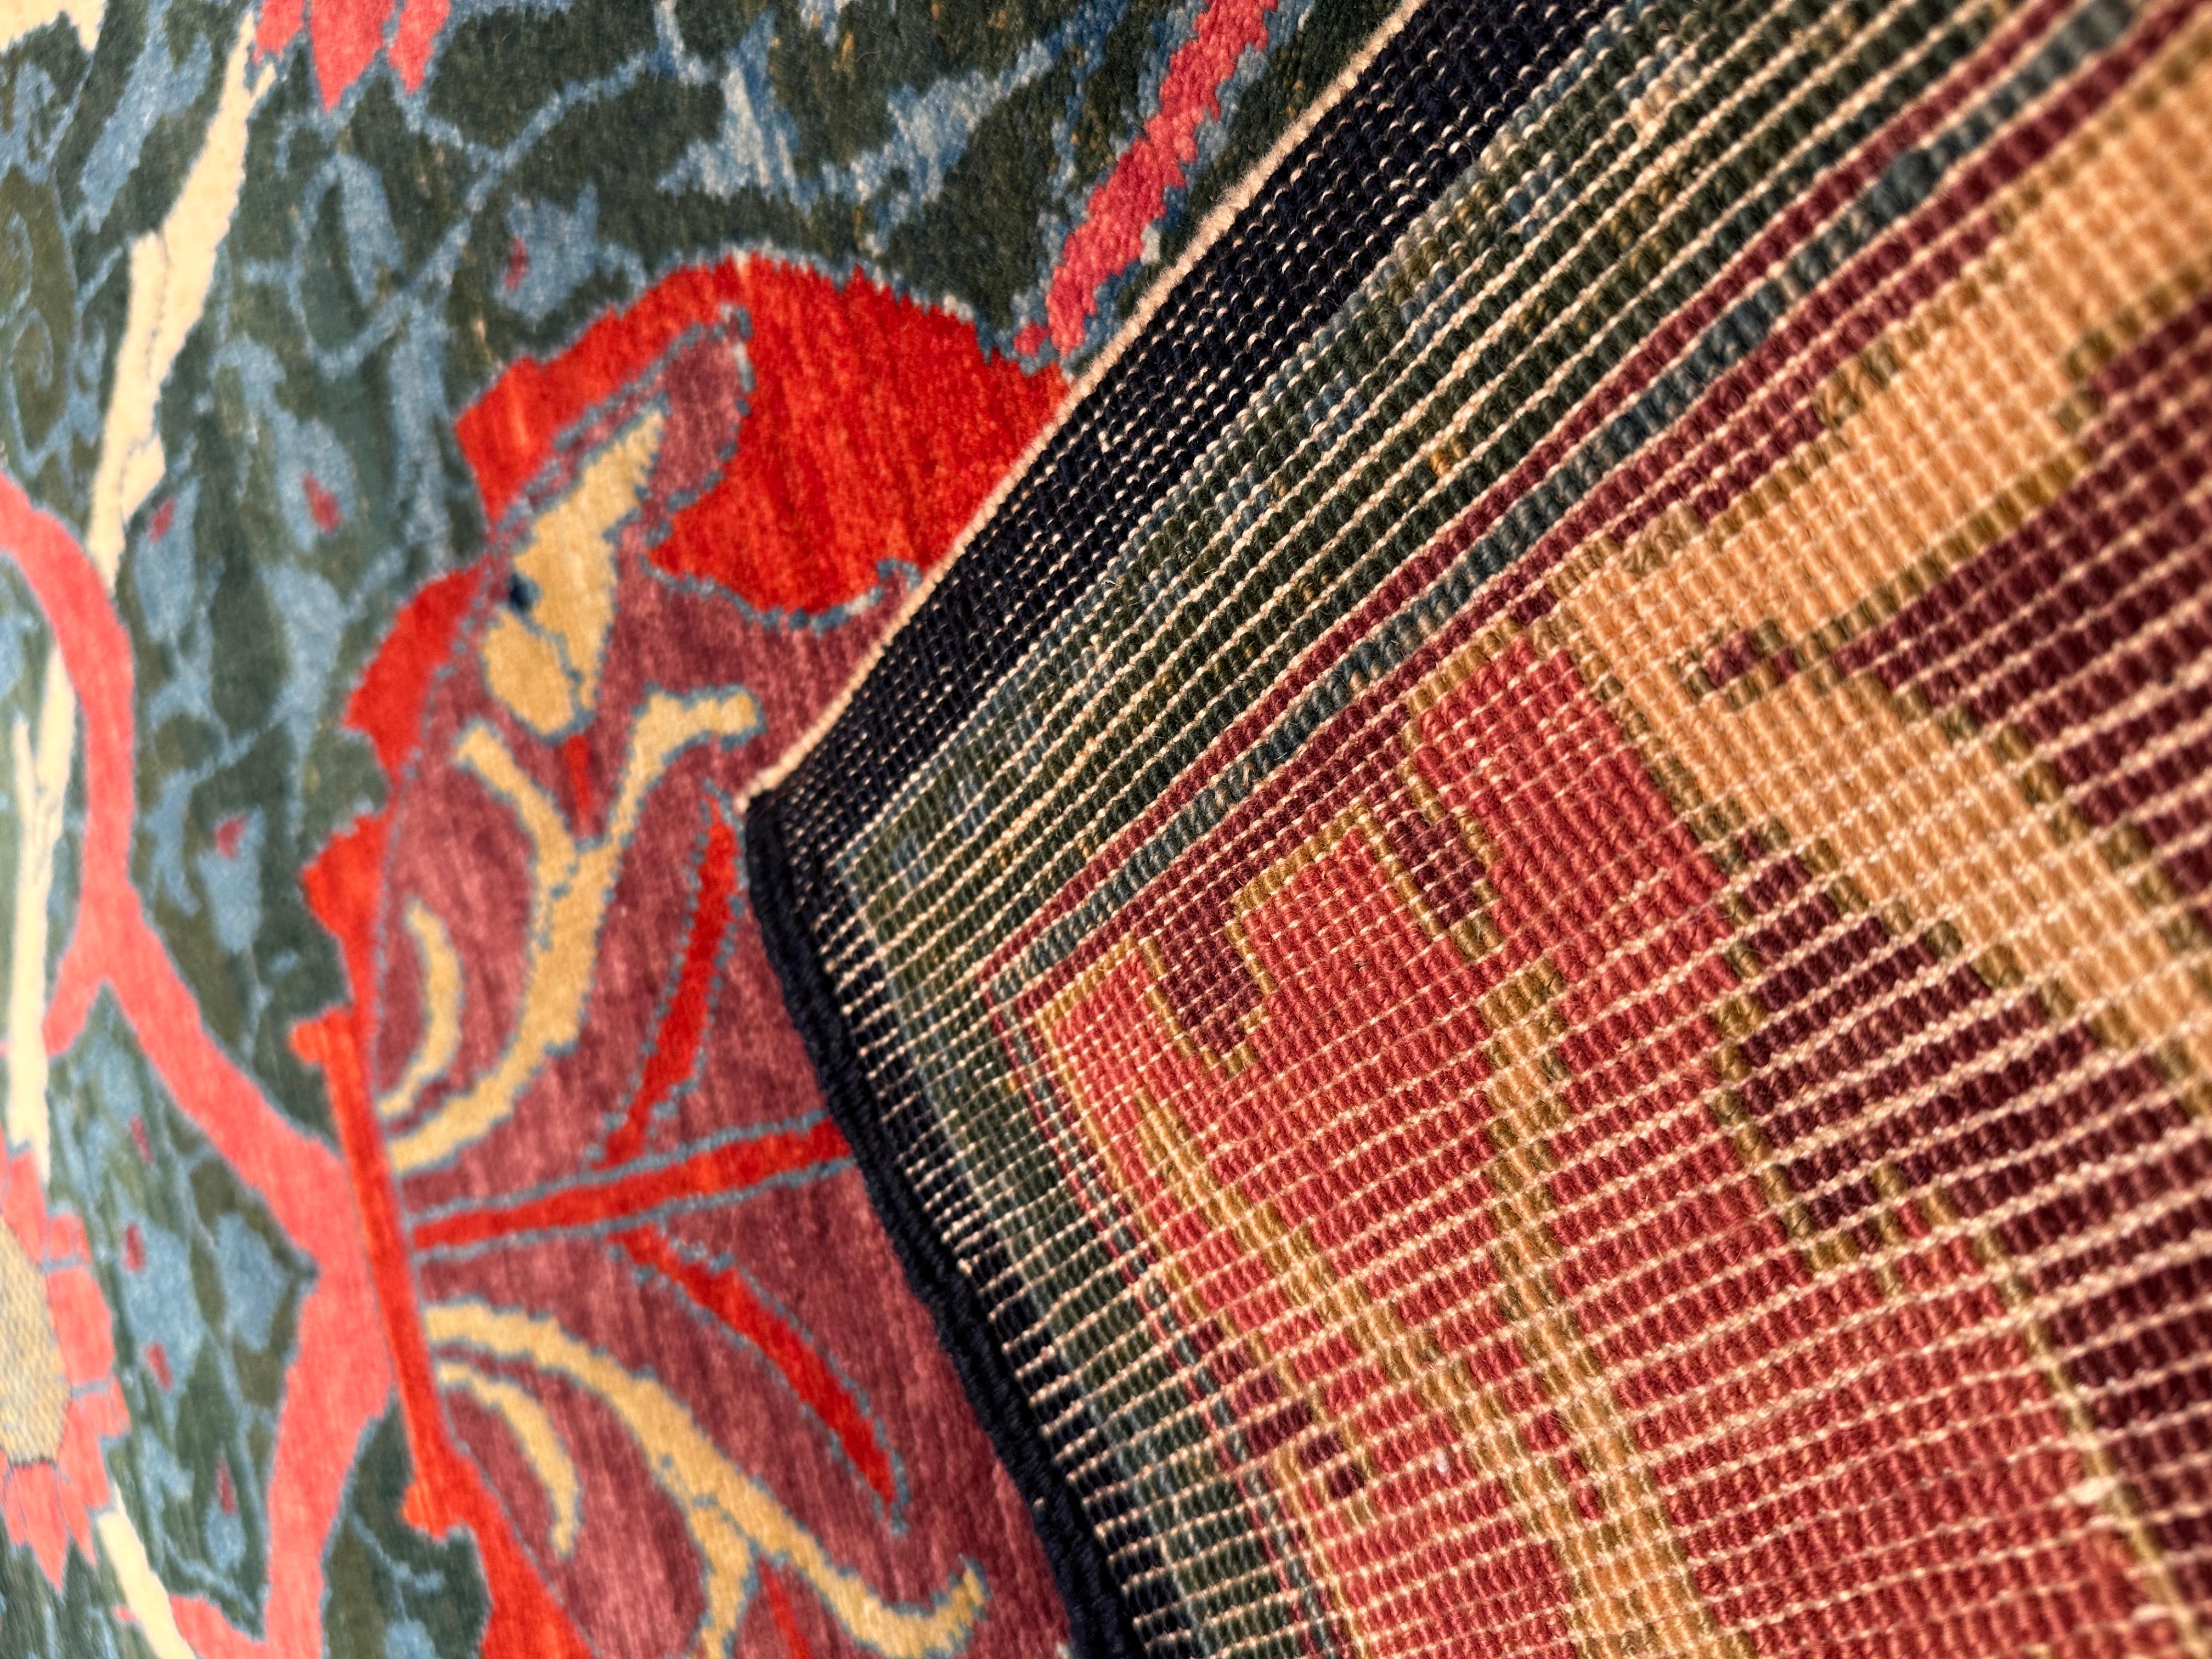 La source du tapis provient du livre Arts & Crafts Carpets, de Malcolm Haslam, et David Black, 1991, fig.49. Ce tapis Hammersmith a été conçu par William Morris en 1882, au Royaume-Uni. En 1887, l'artiste et relieur anglais T.J. Cobden Sanderson a